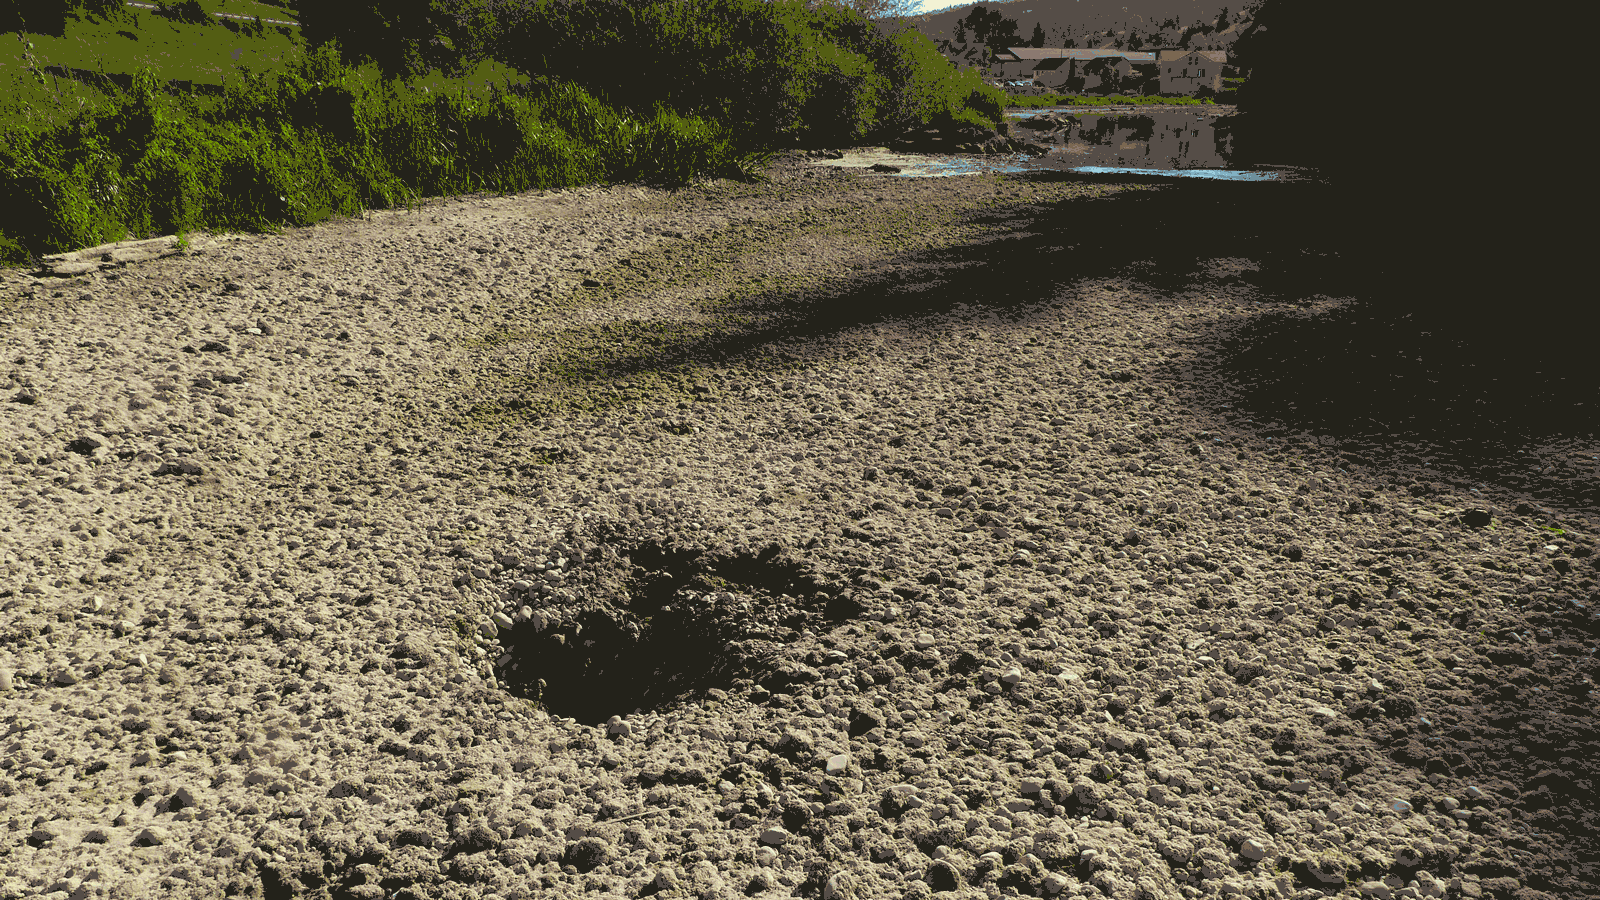 photo du lit d'une rivière à sec